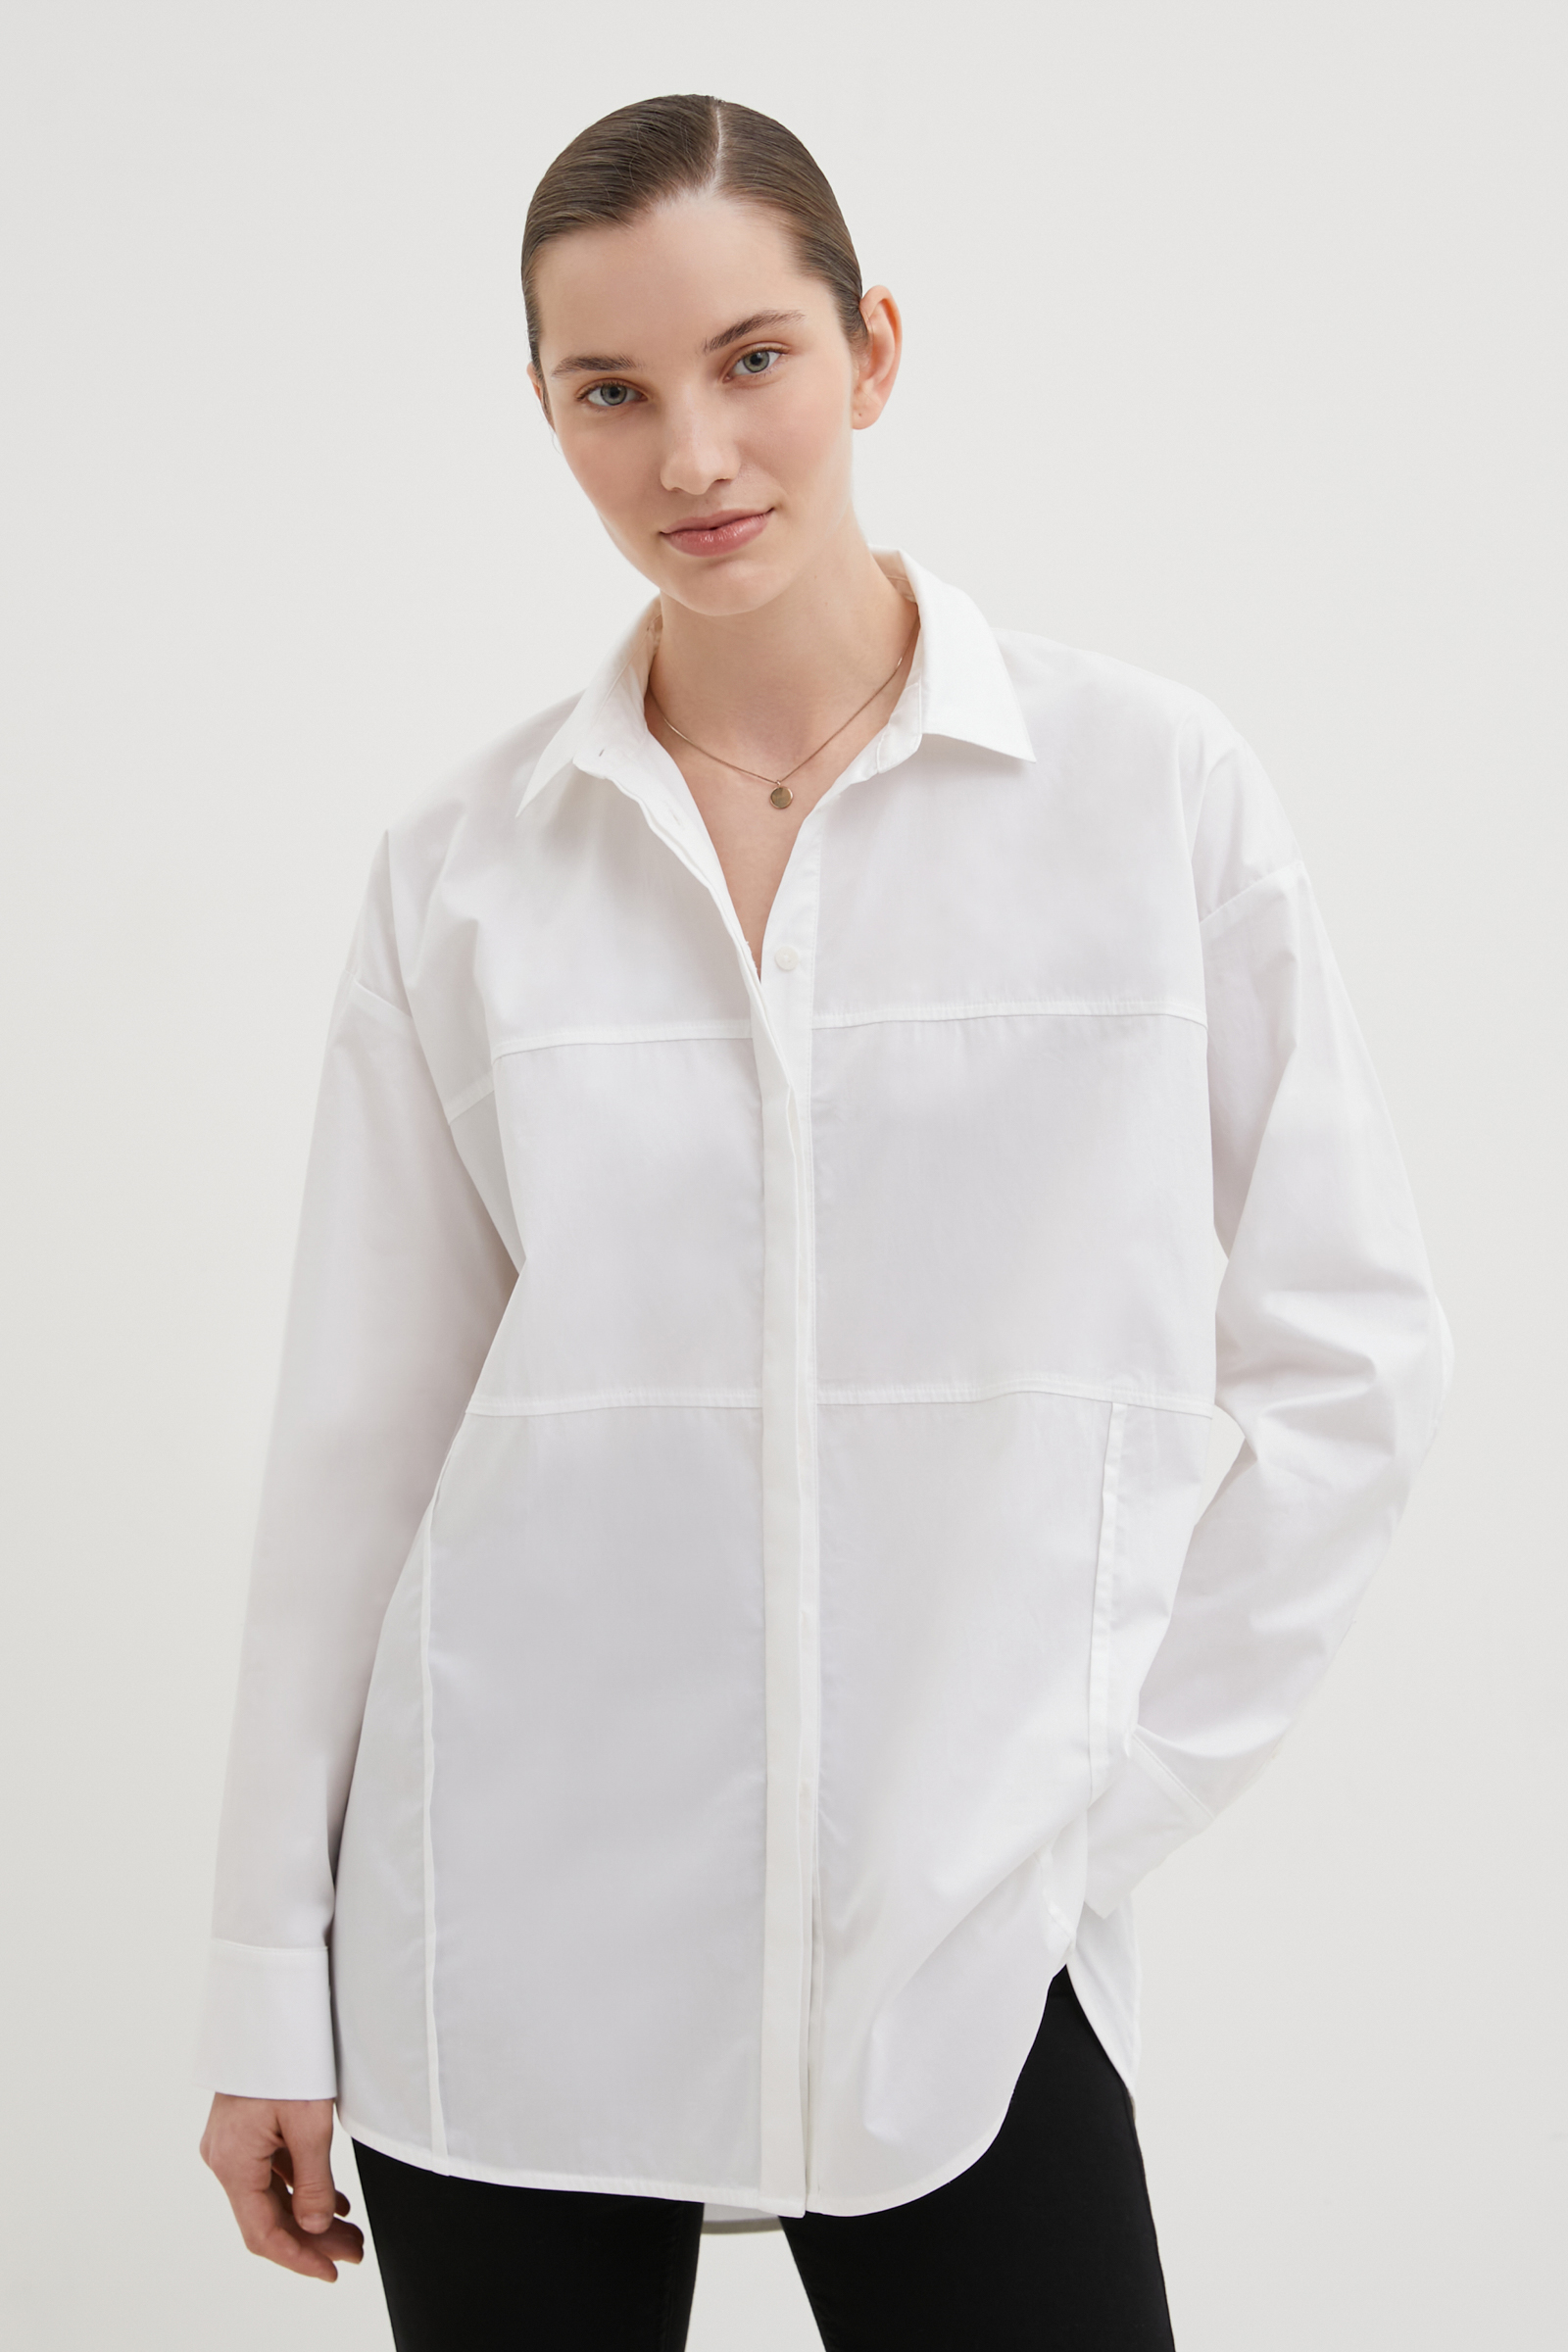 Рубашка женская Finn Flare FBD110133 белая L